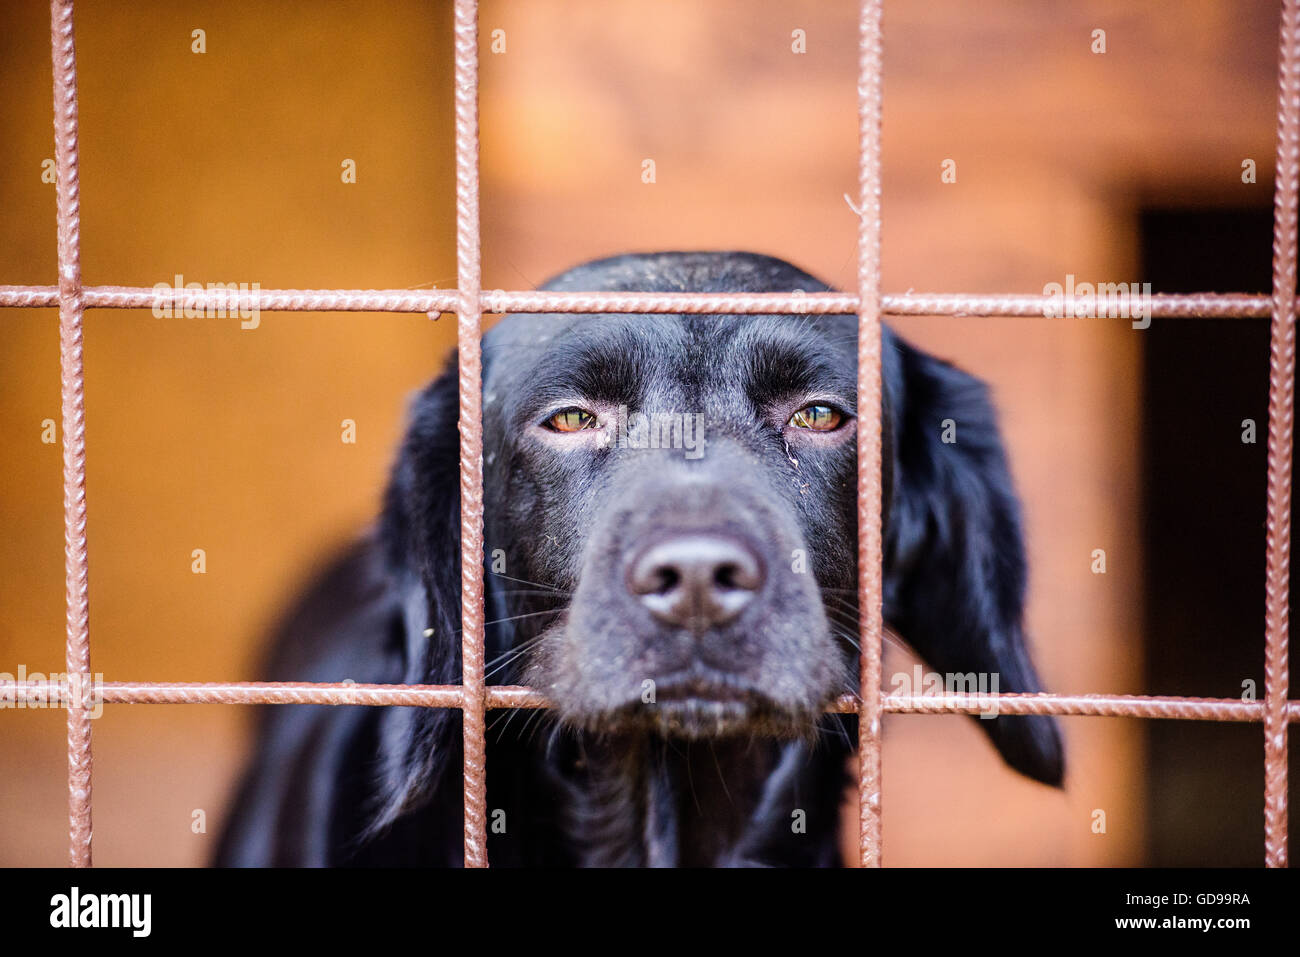 https://c8.alamy.com/comp/GD99RA/close-up-of-sad-black-dog-in-cage-GD99RA.jpg